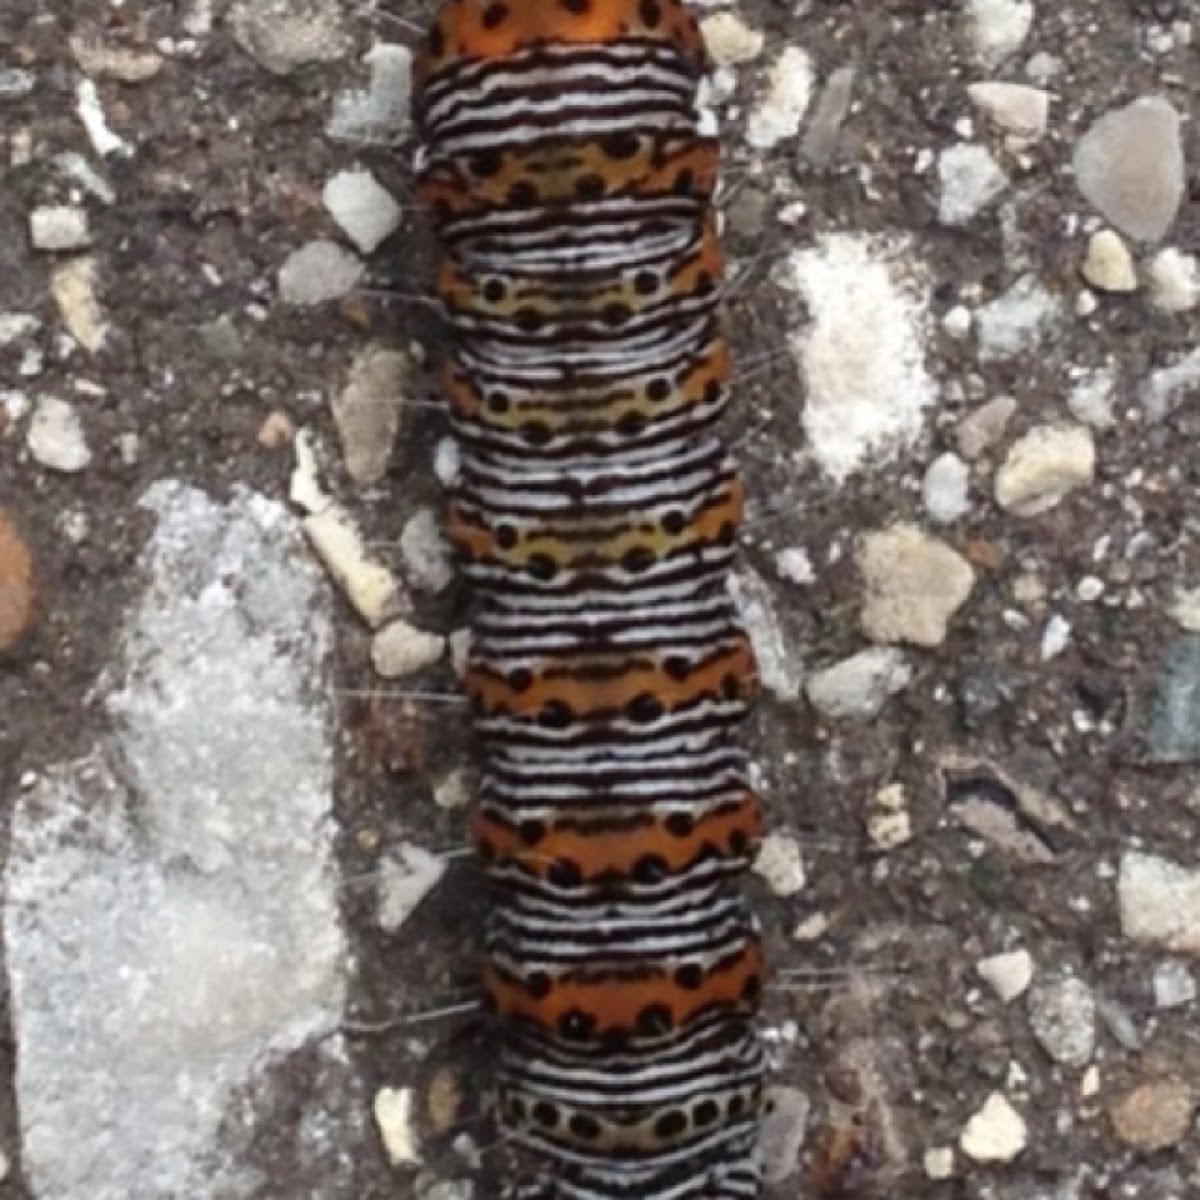 Wood Nymph Caterpillar